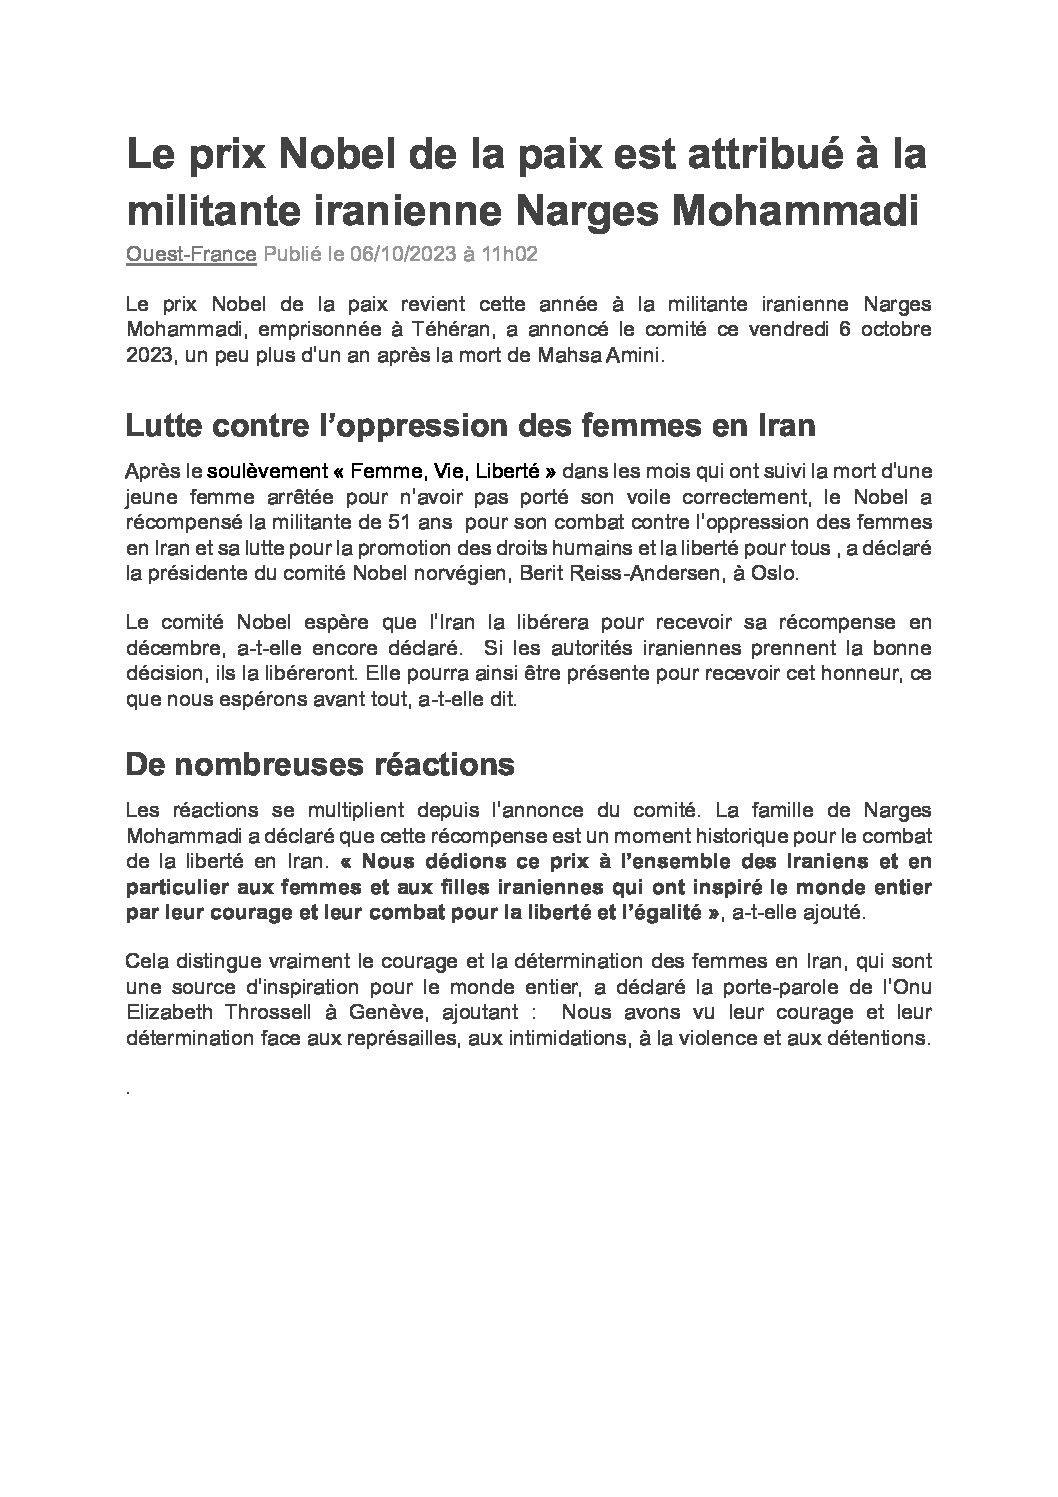 6 octobre 2023 : Le prix Nobel de la paix 2023 est attribué à la militante iranienne emprisonnée, Narges Mohammadi, pour son combat contre l’oppression des femmes en Iran.